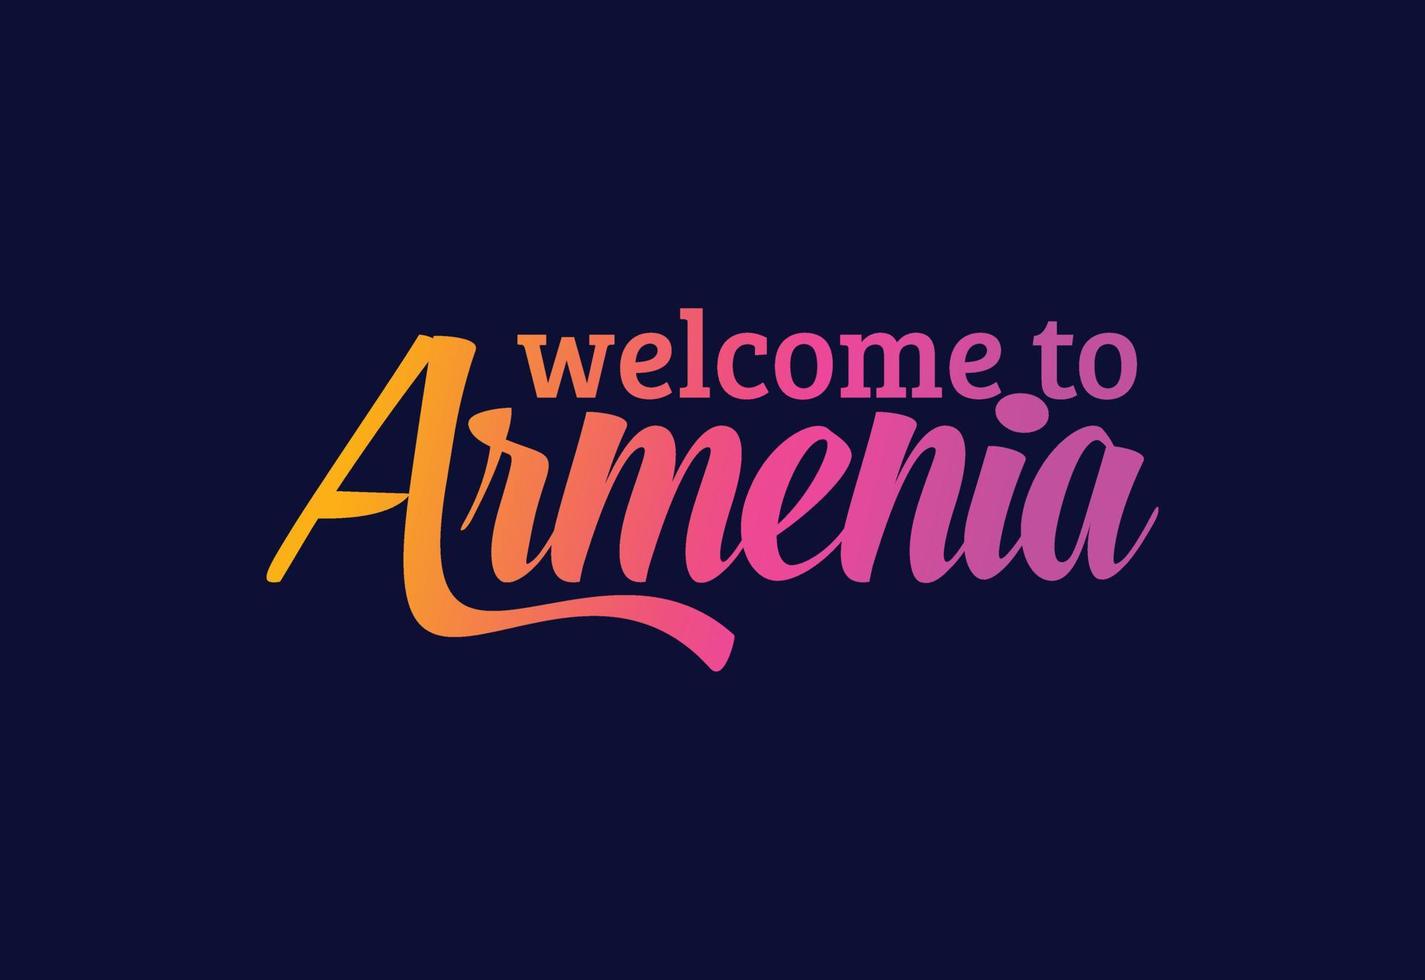 bienvenido a la ilustración de diseño de fuente creativa de texto de palabra de armenia. cartel de bienvenida vector